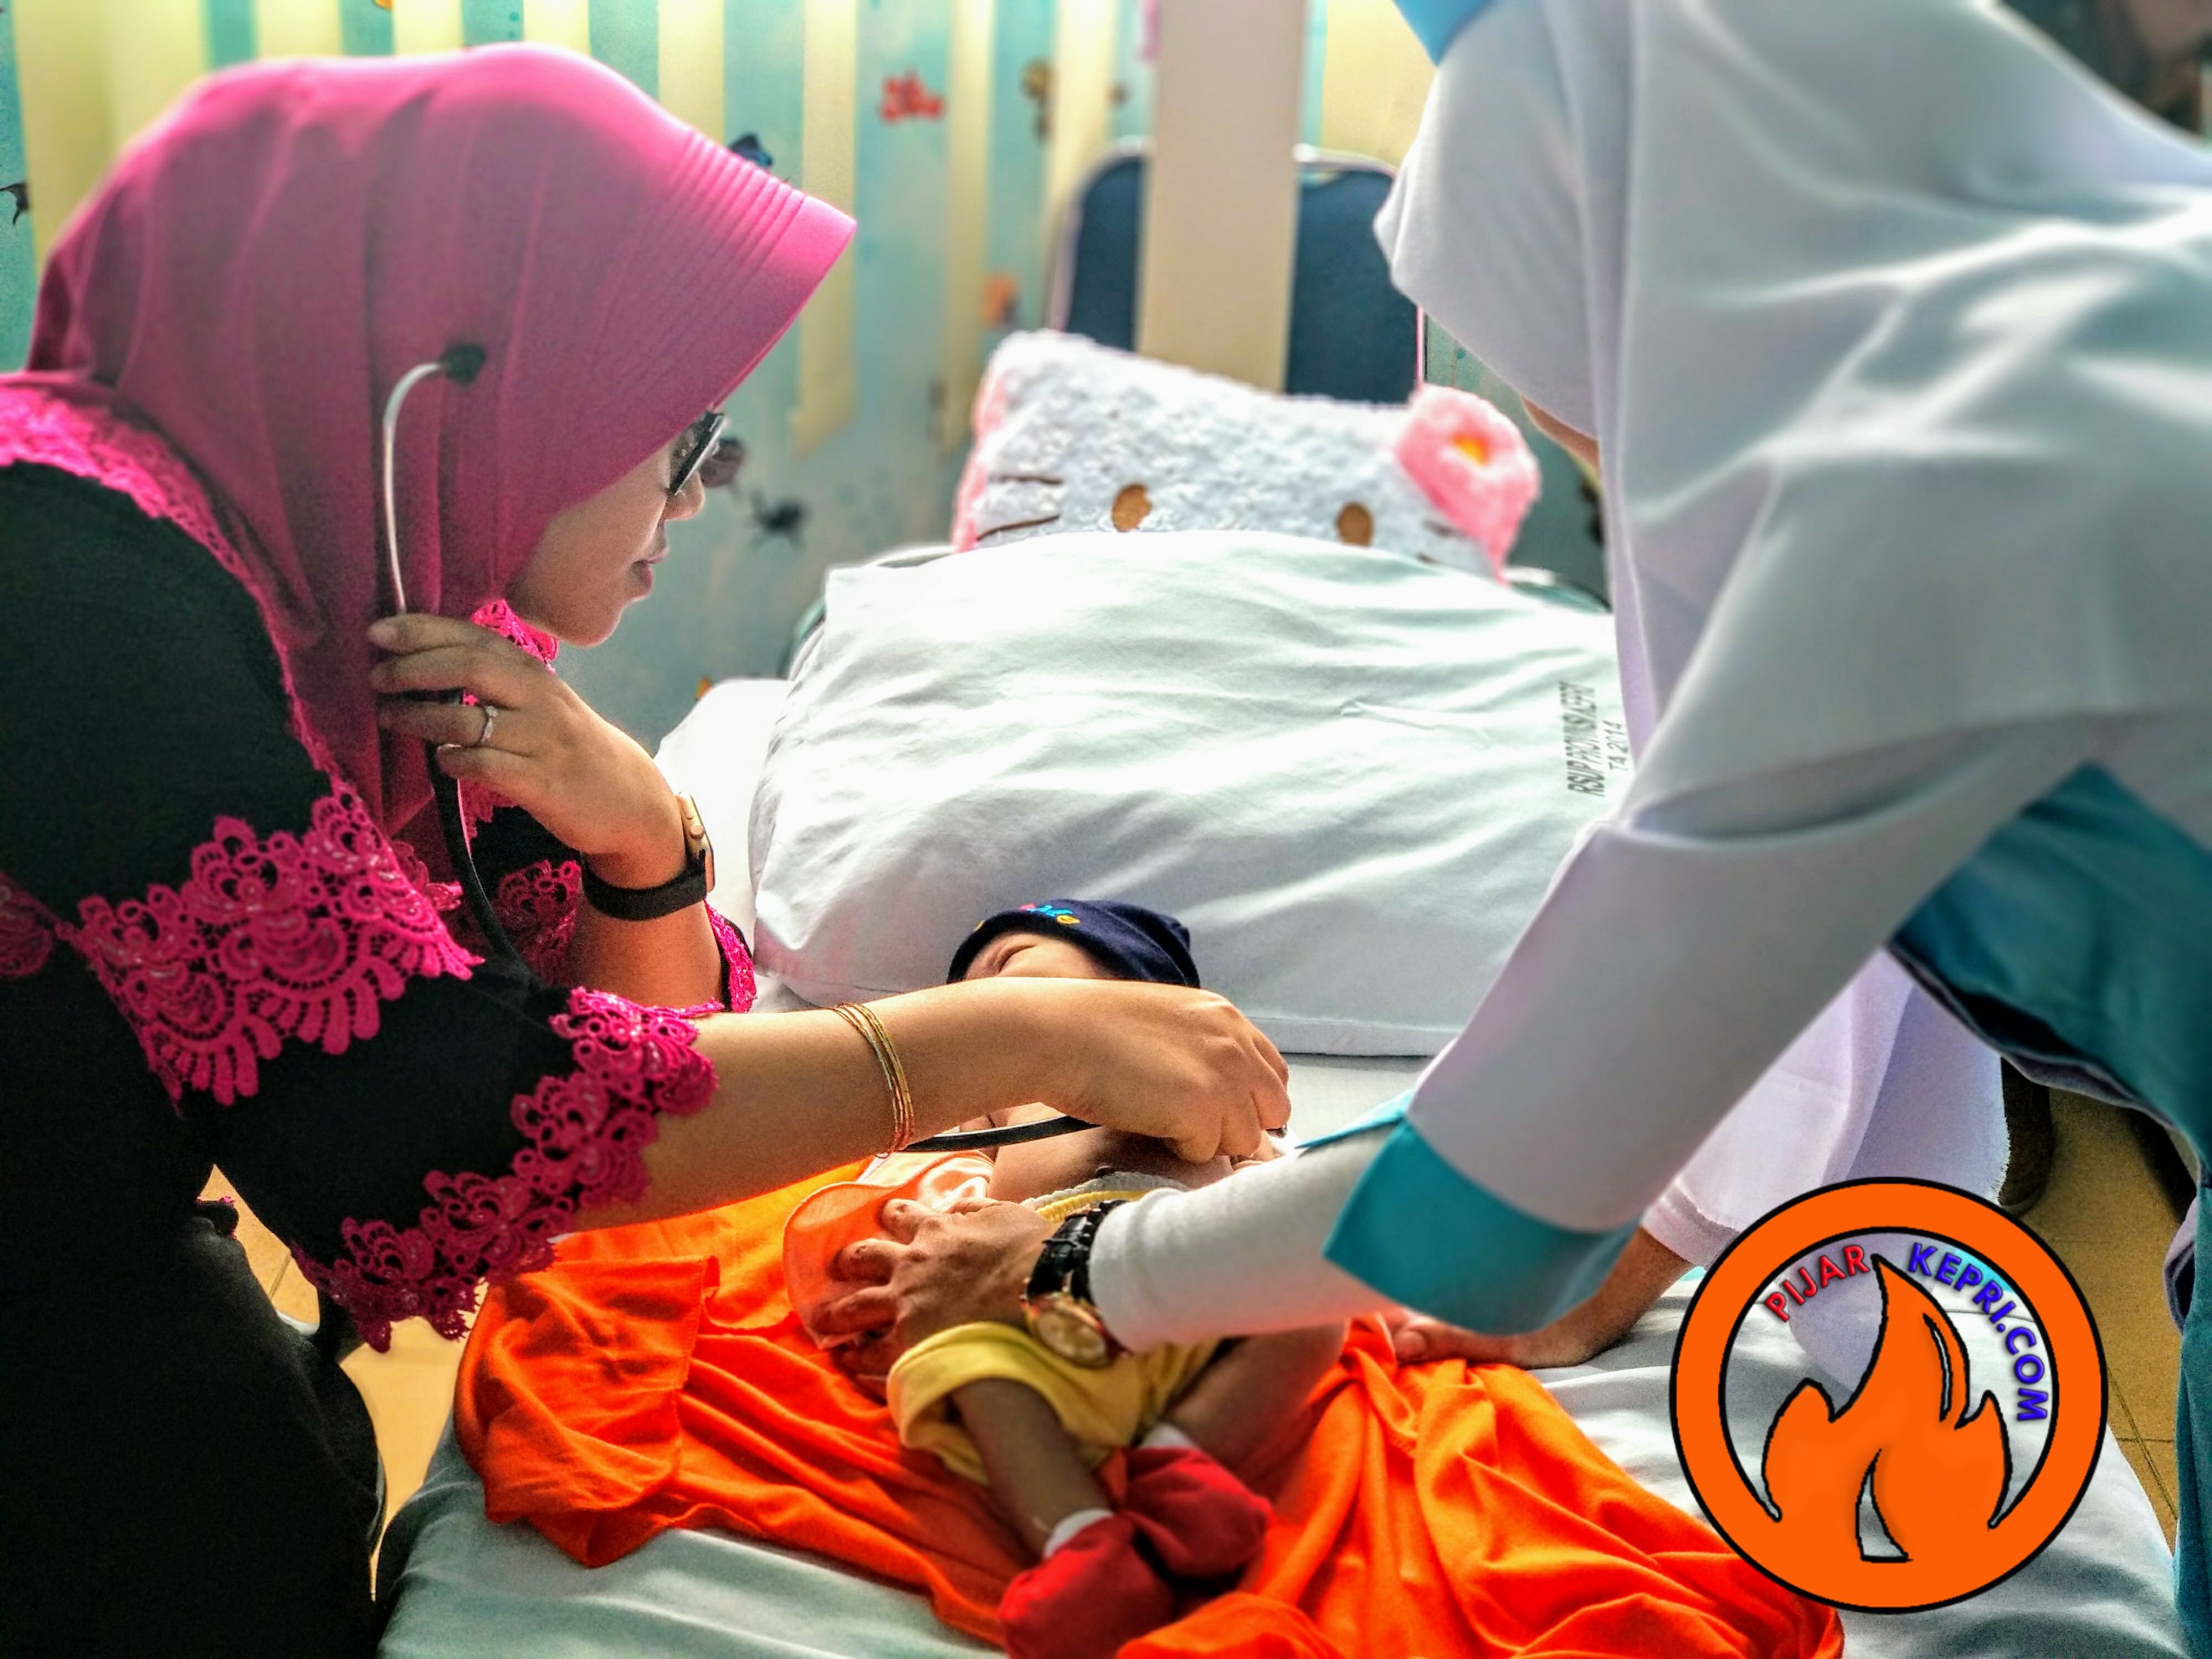 Dokter sepesialis anak Rumah Sakit Umum Daerah (RSUD) Raja Ahmad Thabib Kepulauan Riau, Helmitri saat memeriksa kondisi Bayi Arkan beberapa waktu lalu. (Foto: Aji Anugraha)